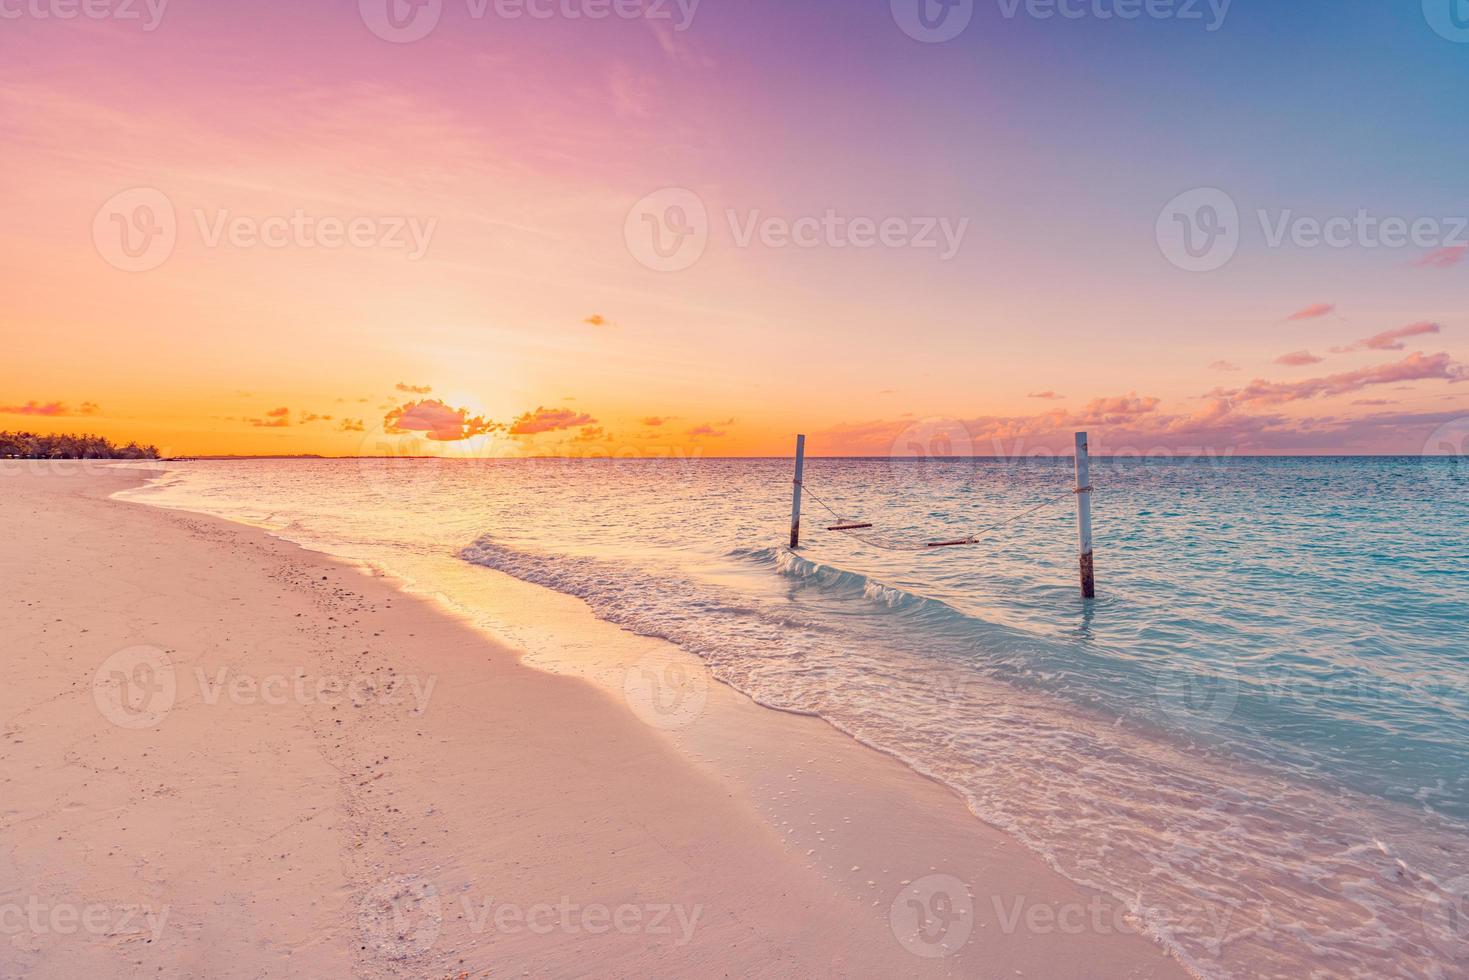 tropicale tramonto spiaggia e cielo sfondo come esotico estate paesaggio con spiaggia swing o amaca e bianca sabbia e calma mare spiaggia striscione. Paradiso isola spiaggia vacanza o estate vacanza destinazione foto